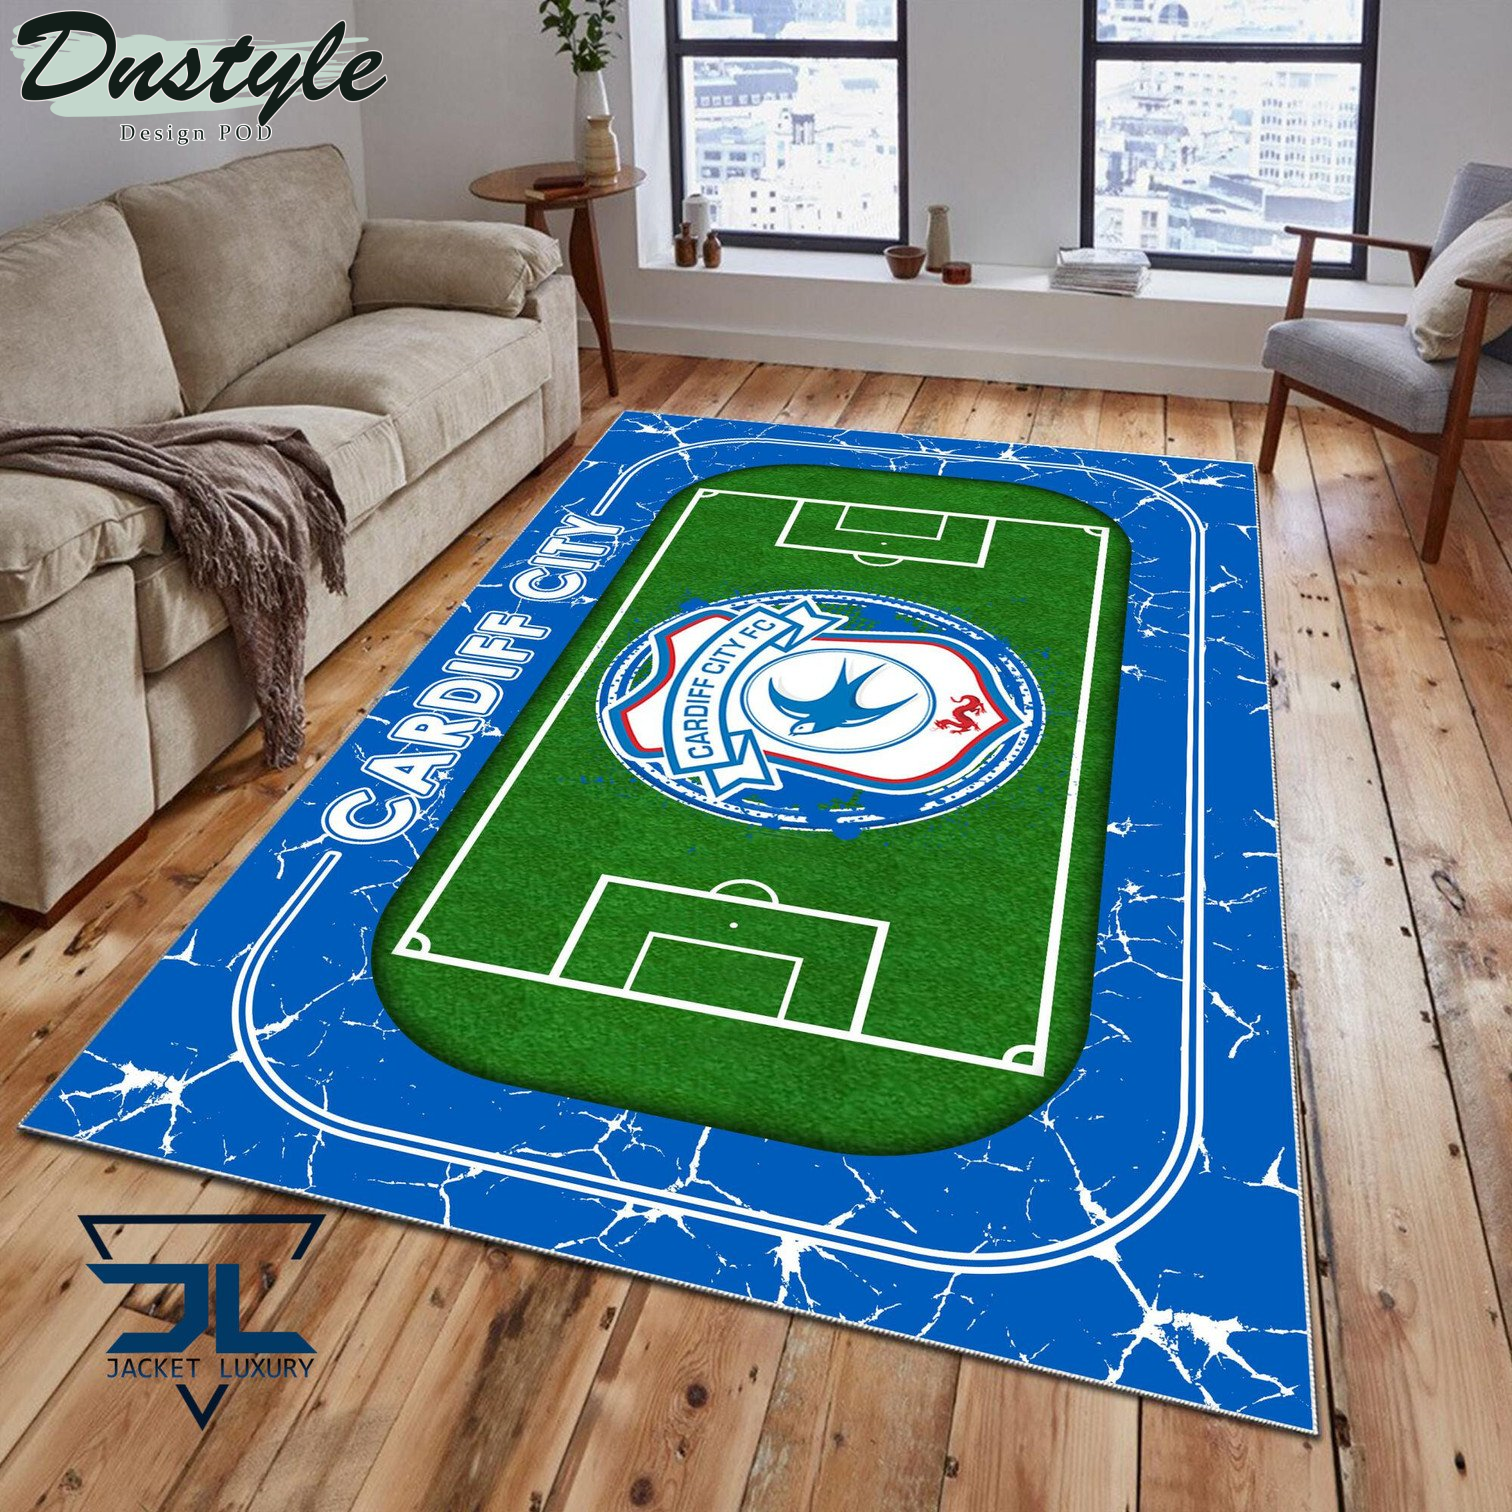 Cardiff City F.C Rug Carpet